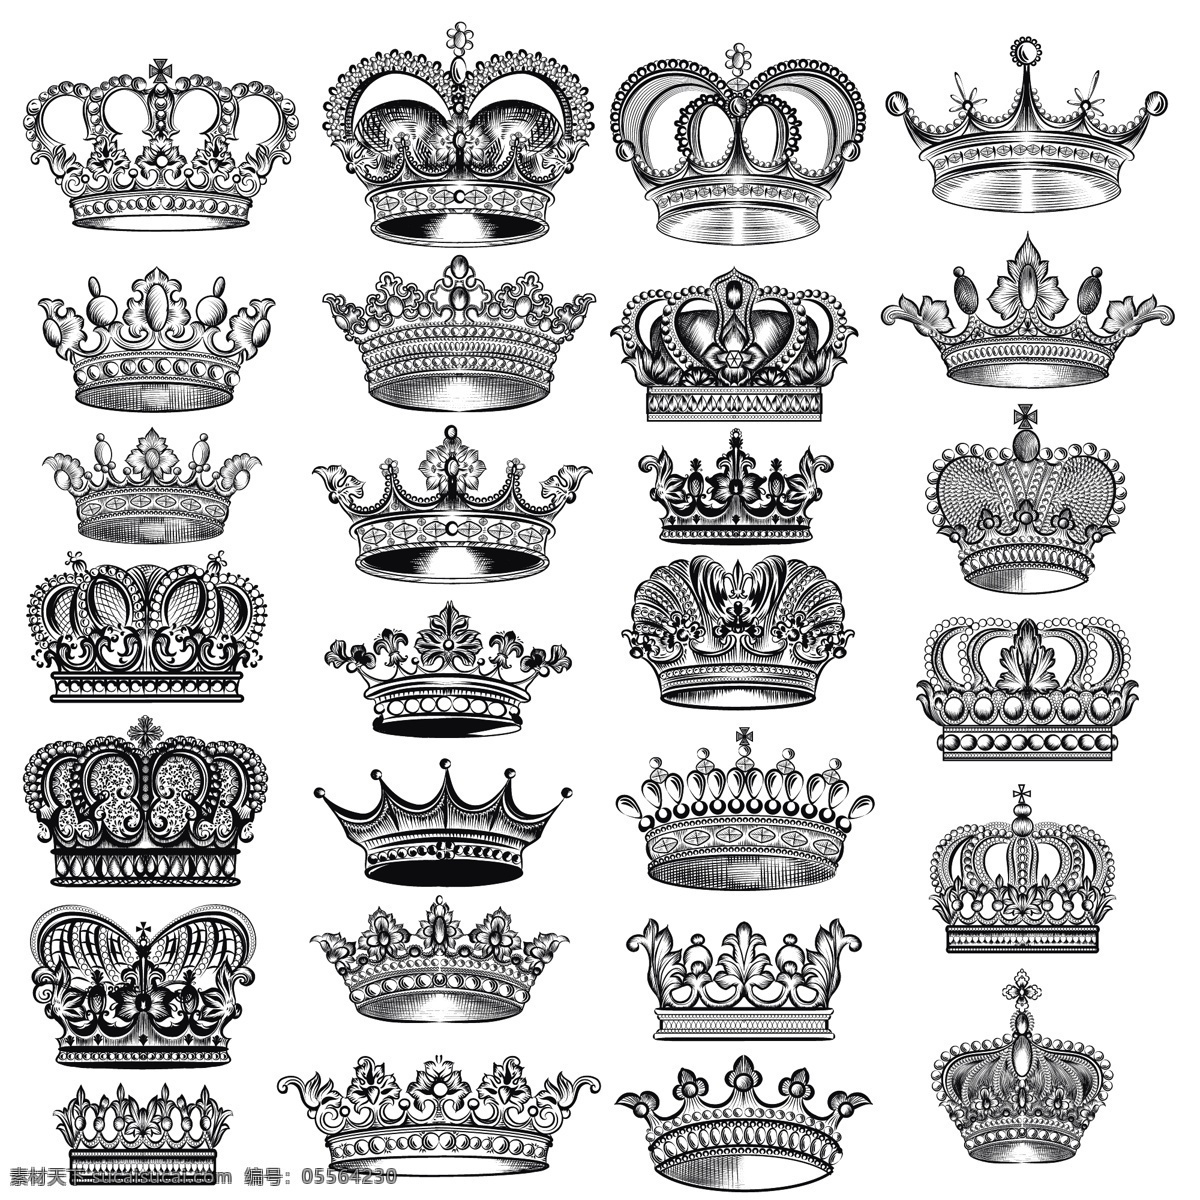 冠设计收集 金 皇冠 豪华 装饰 国王 珠宝 权力 王后 国王皇冠 政府 收藏 王国 套装 财富 王位 皇室 君主制